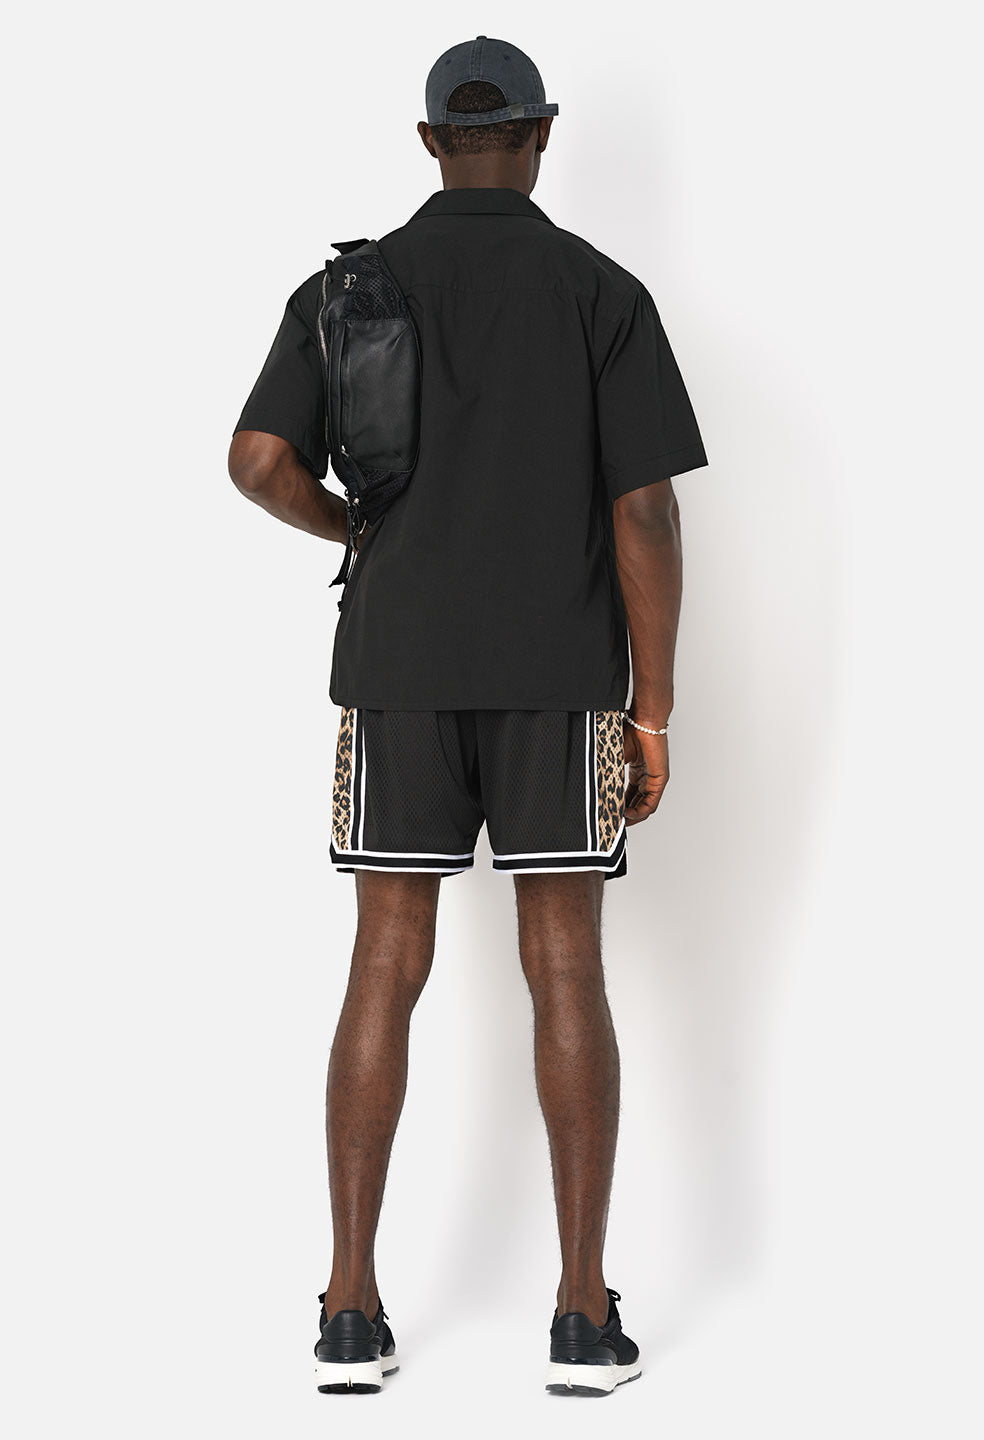 Vintage UofL Basketball Shorts